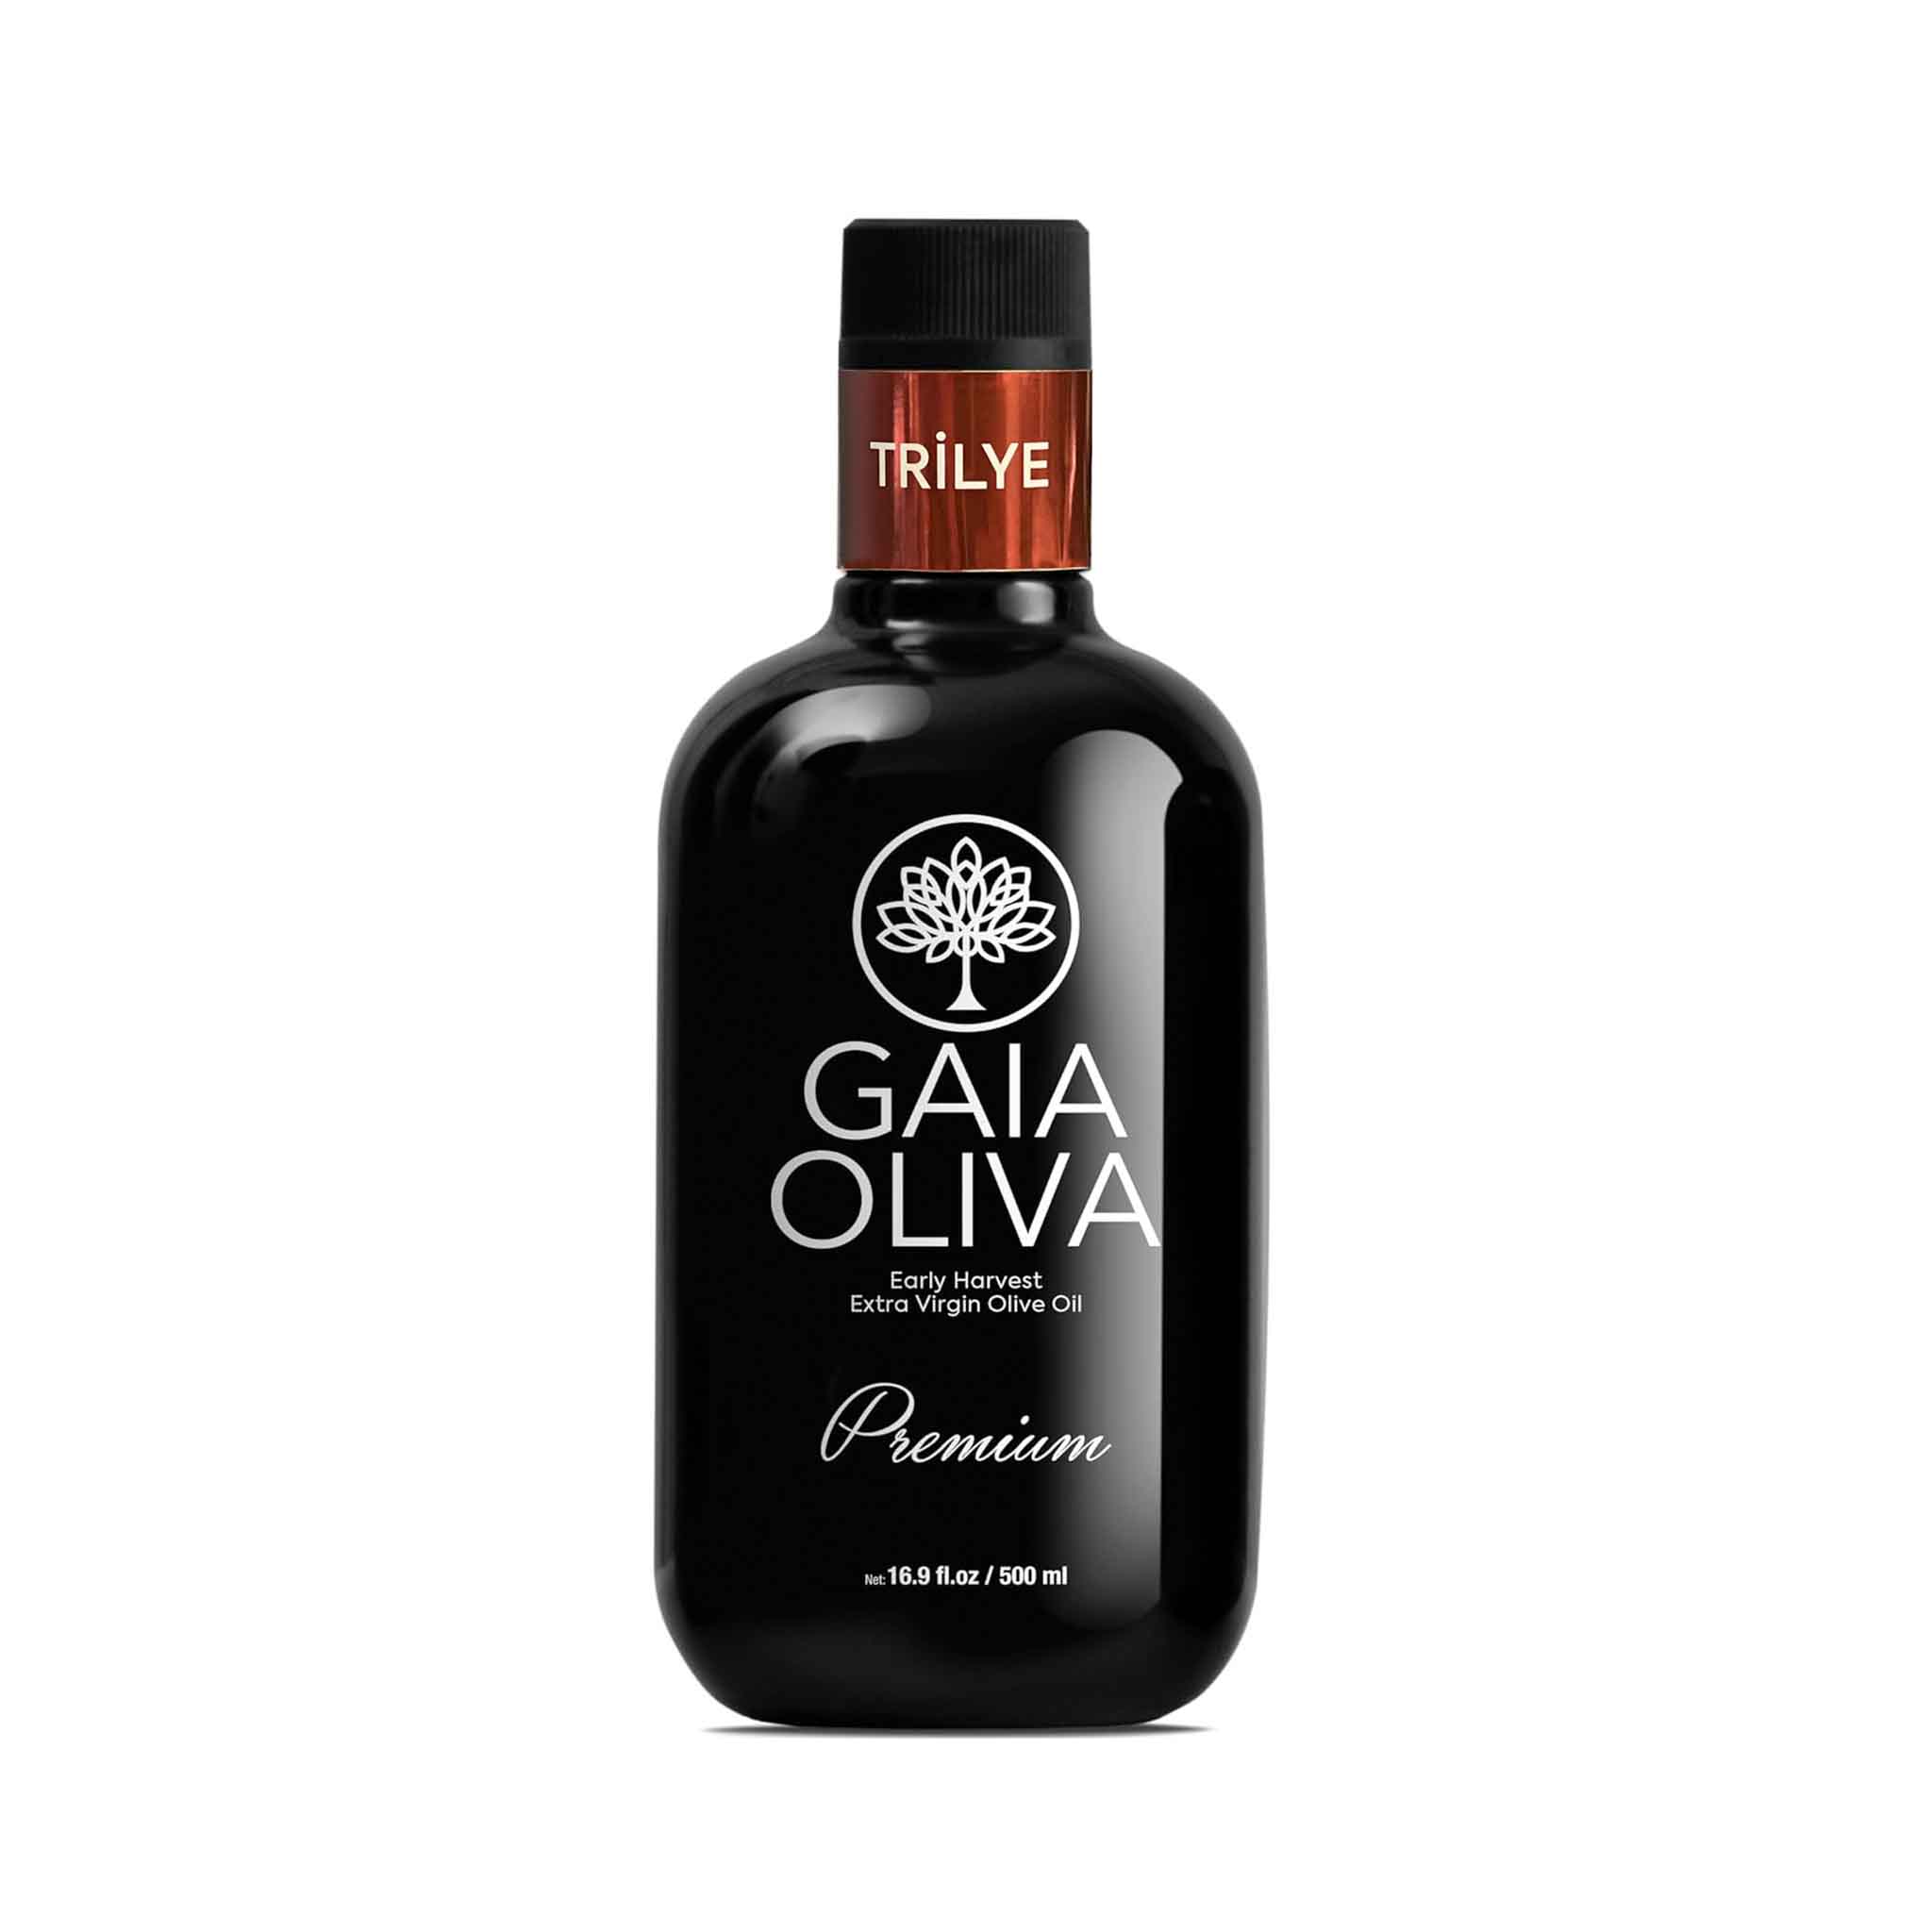 Gaia Oliva Premium Trilye Extra Virgin Olive Oil